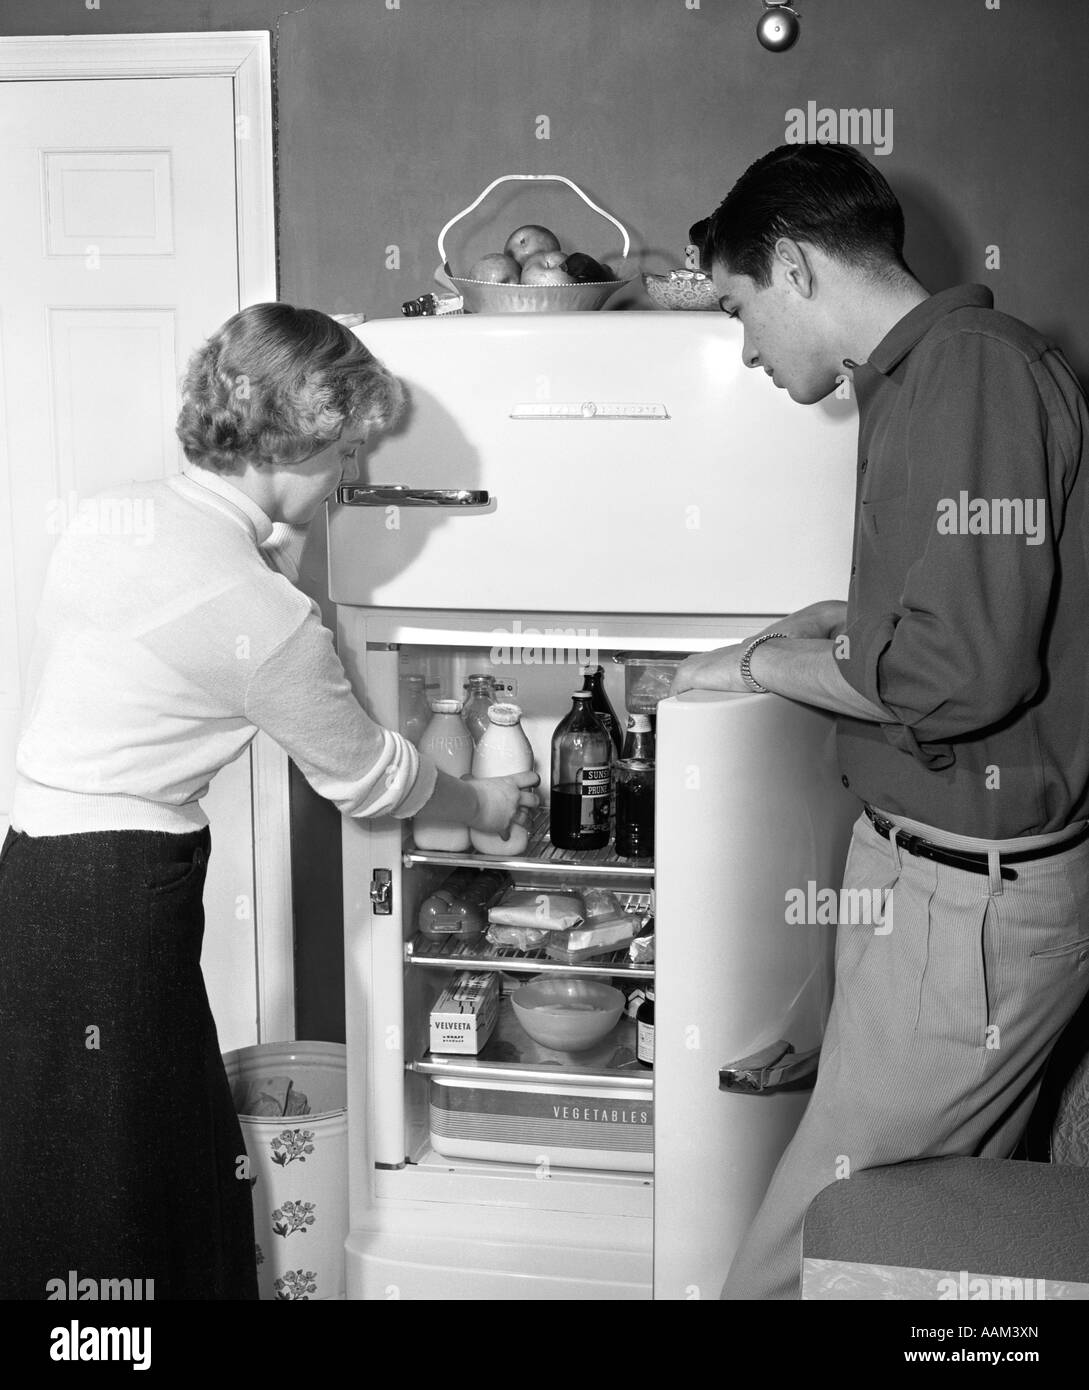 Toma Vertical Del Frigorífico Vintage En La Cocina Imagen de archivo -  Imagen de cabinas, contador: 195729849